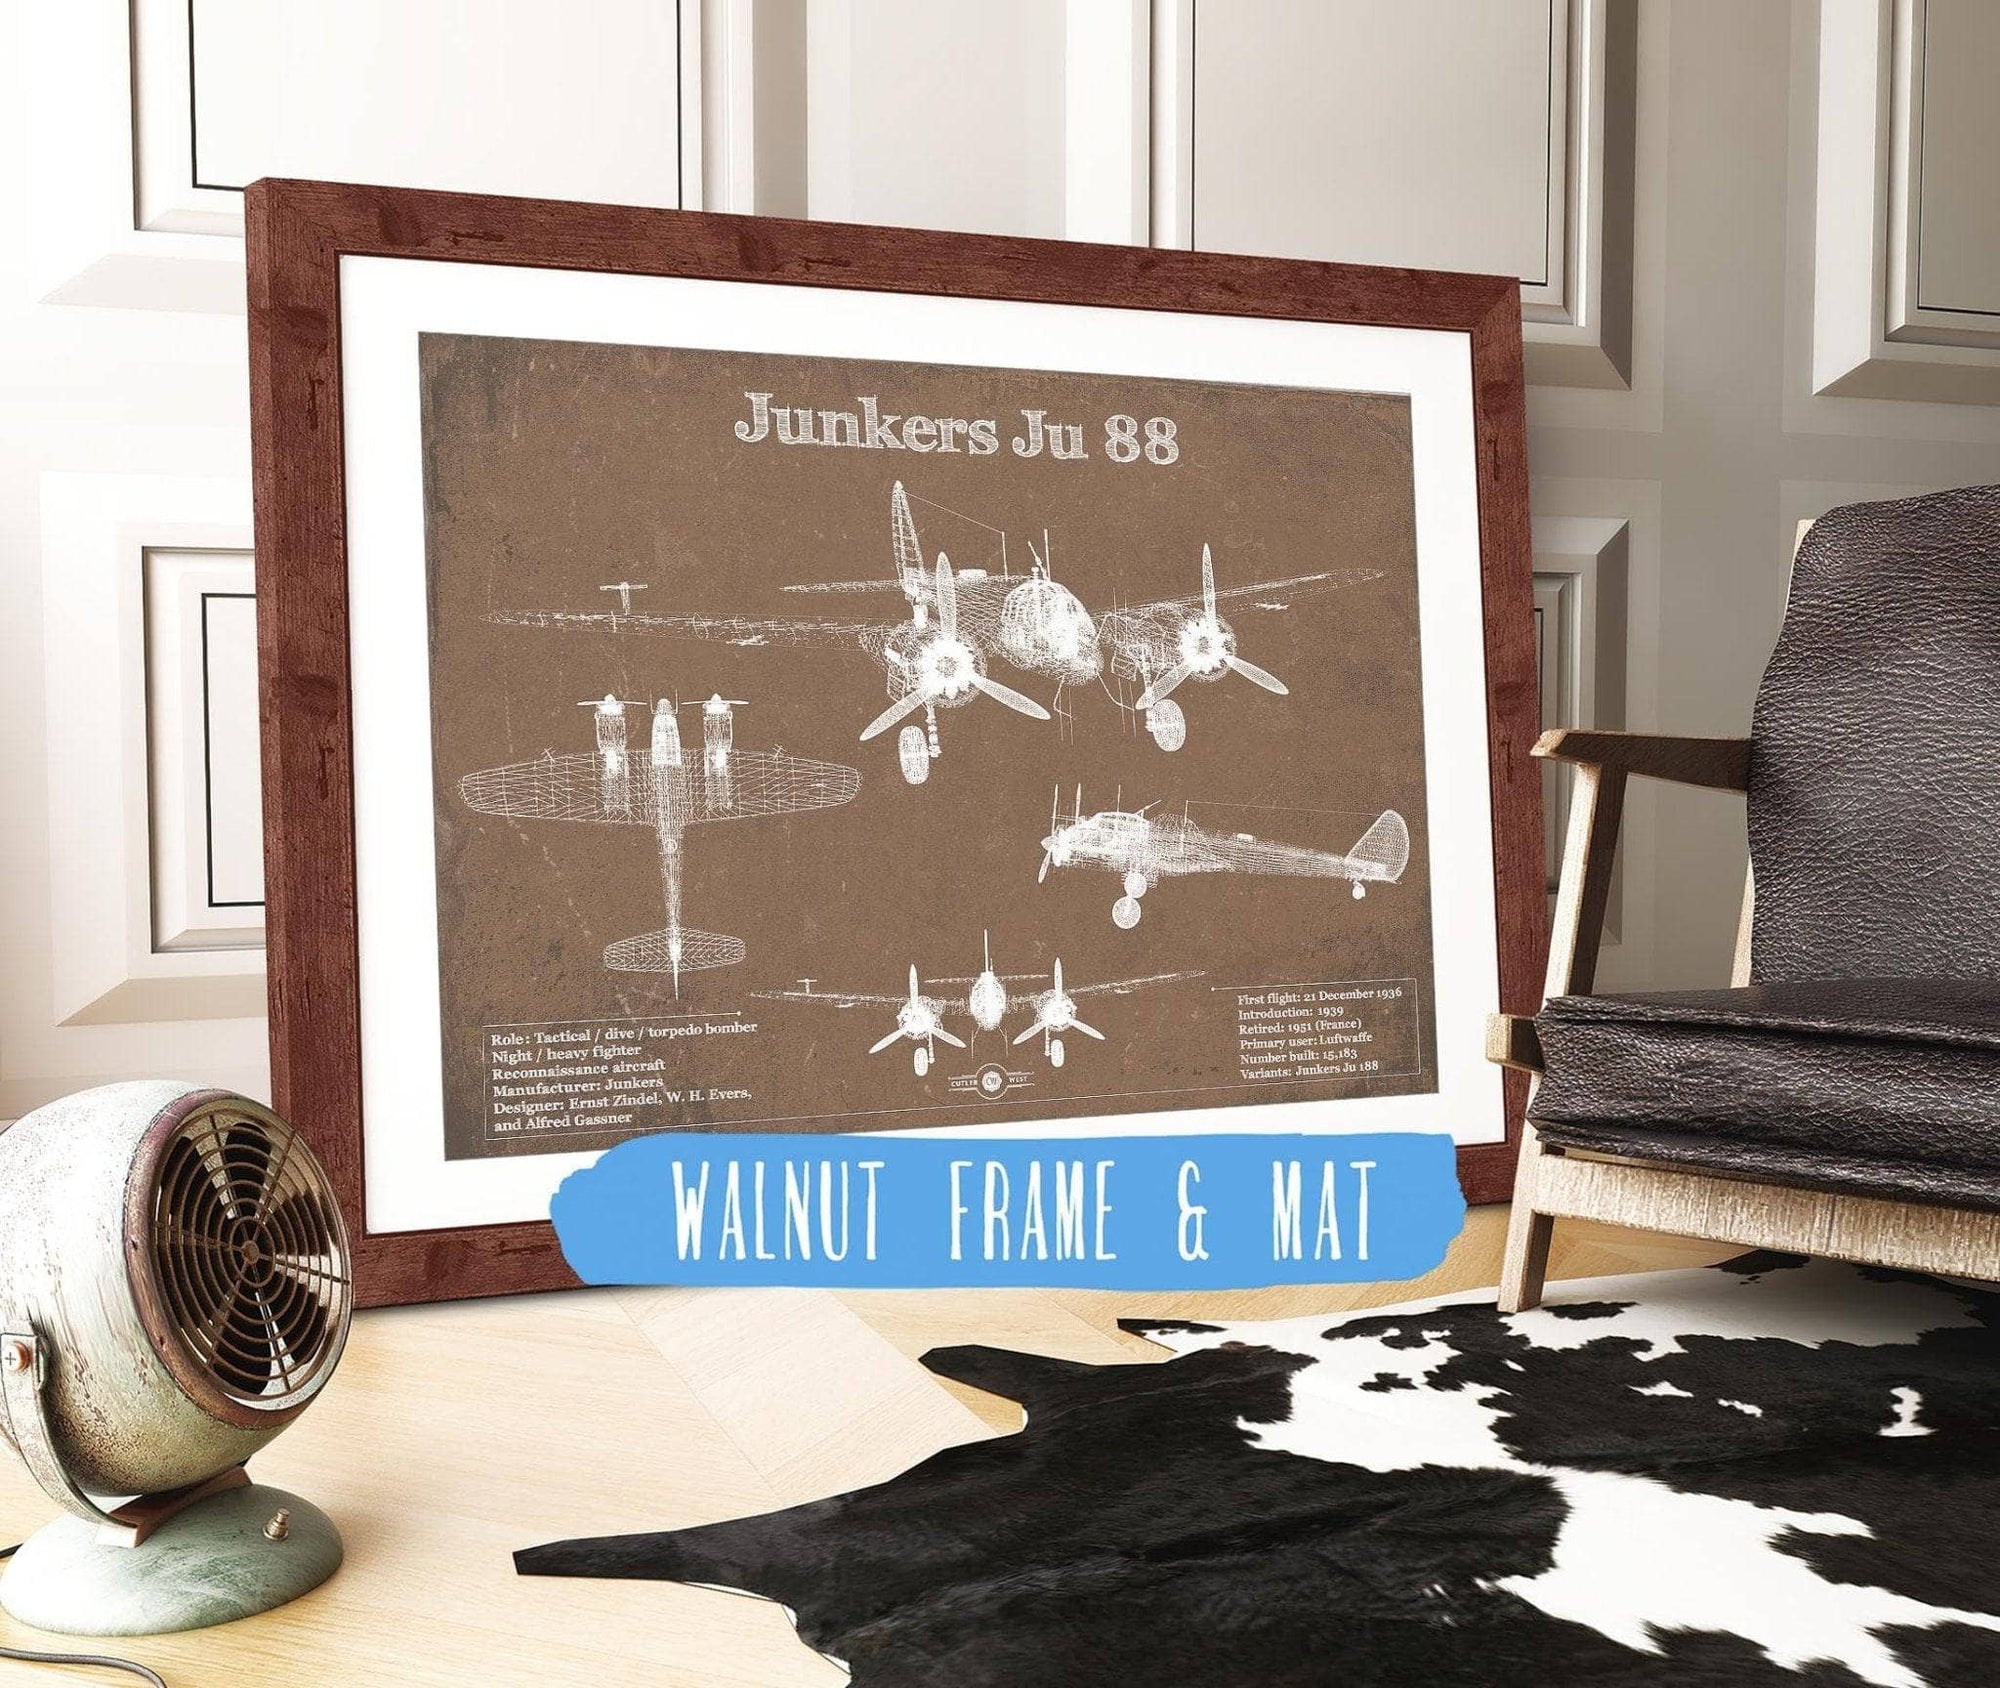 Cutler West Military Aircraft 14" x 11" / Walnut Frame & Mat Junkers Ju 88 WWII Combat Aircraft Vintage Blueprint Original Military Wall Art 933350048_16296